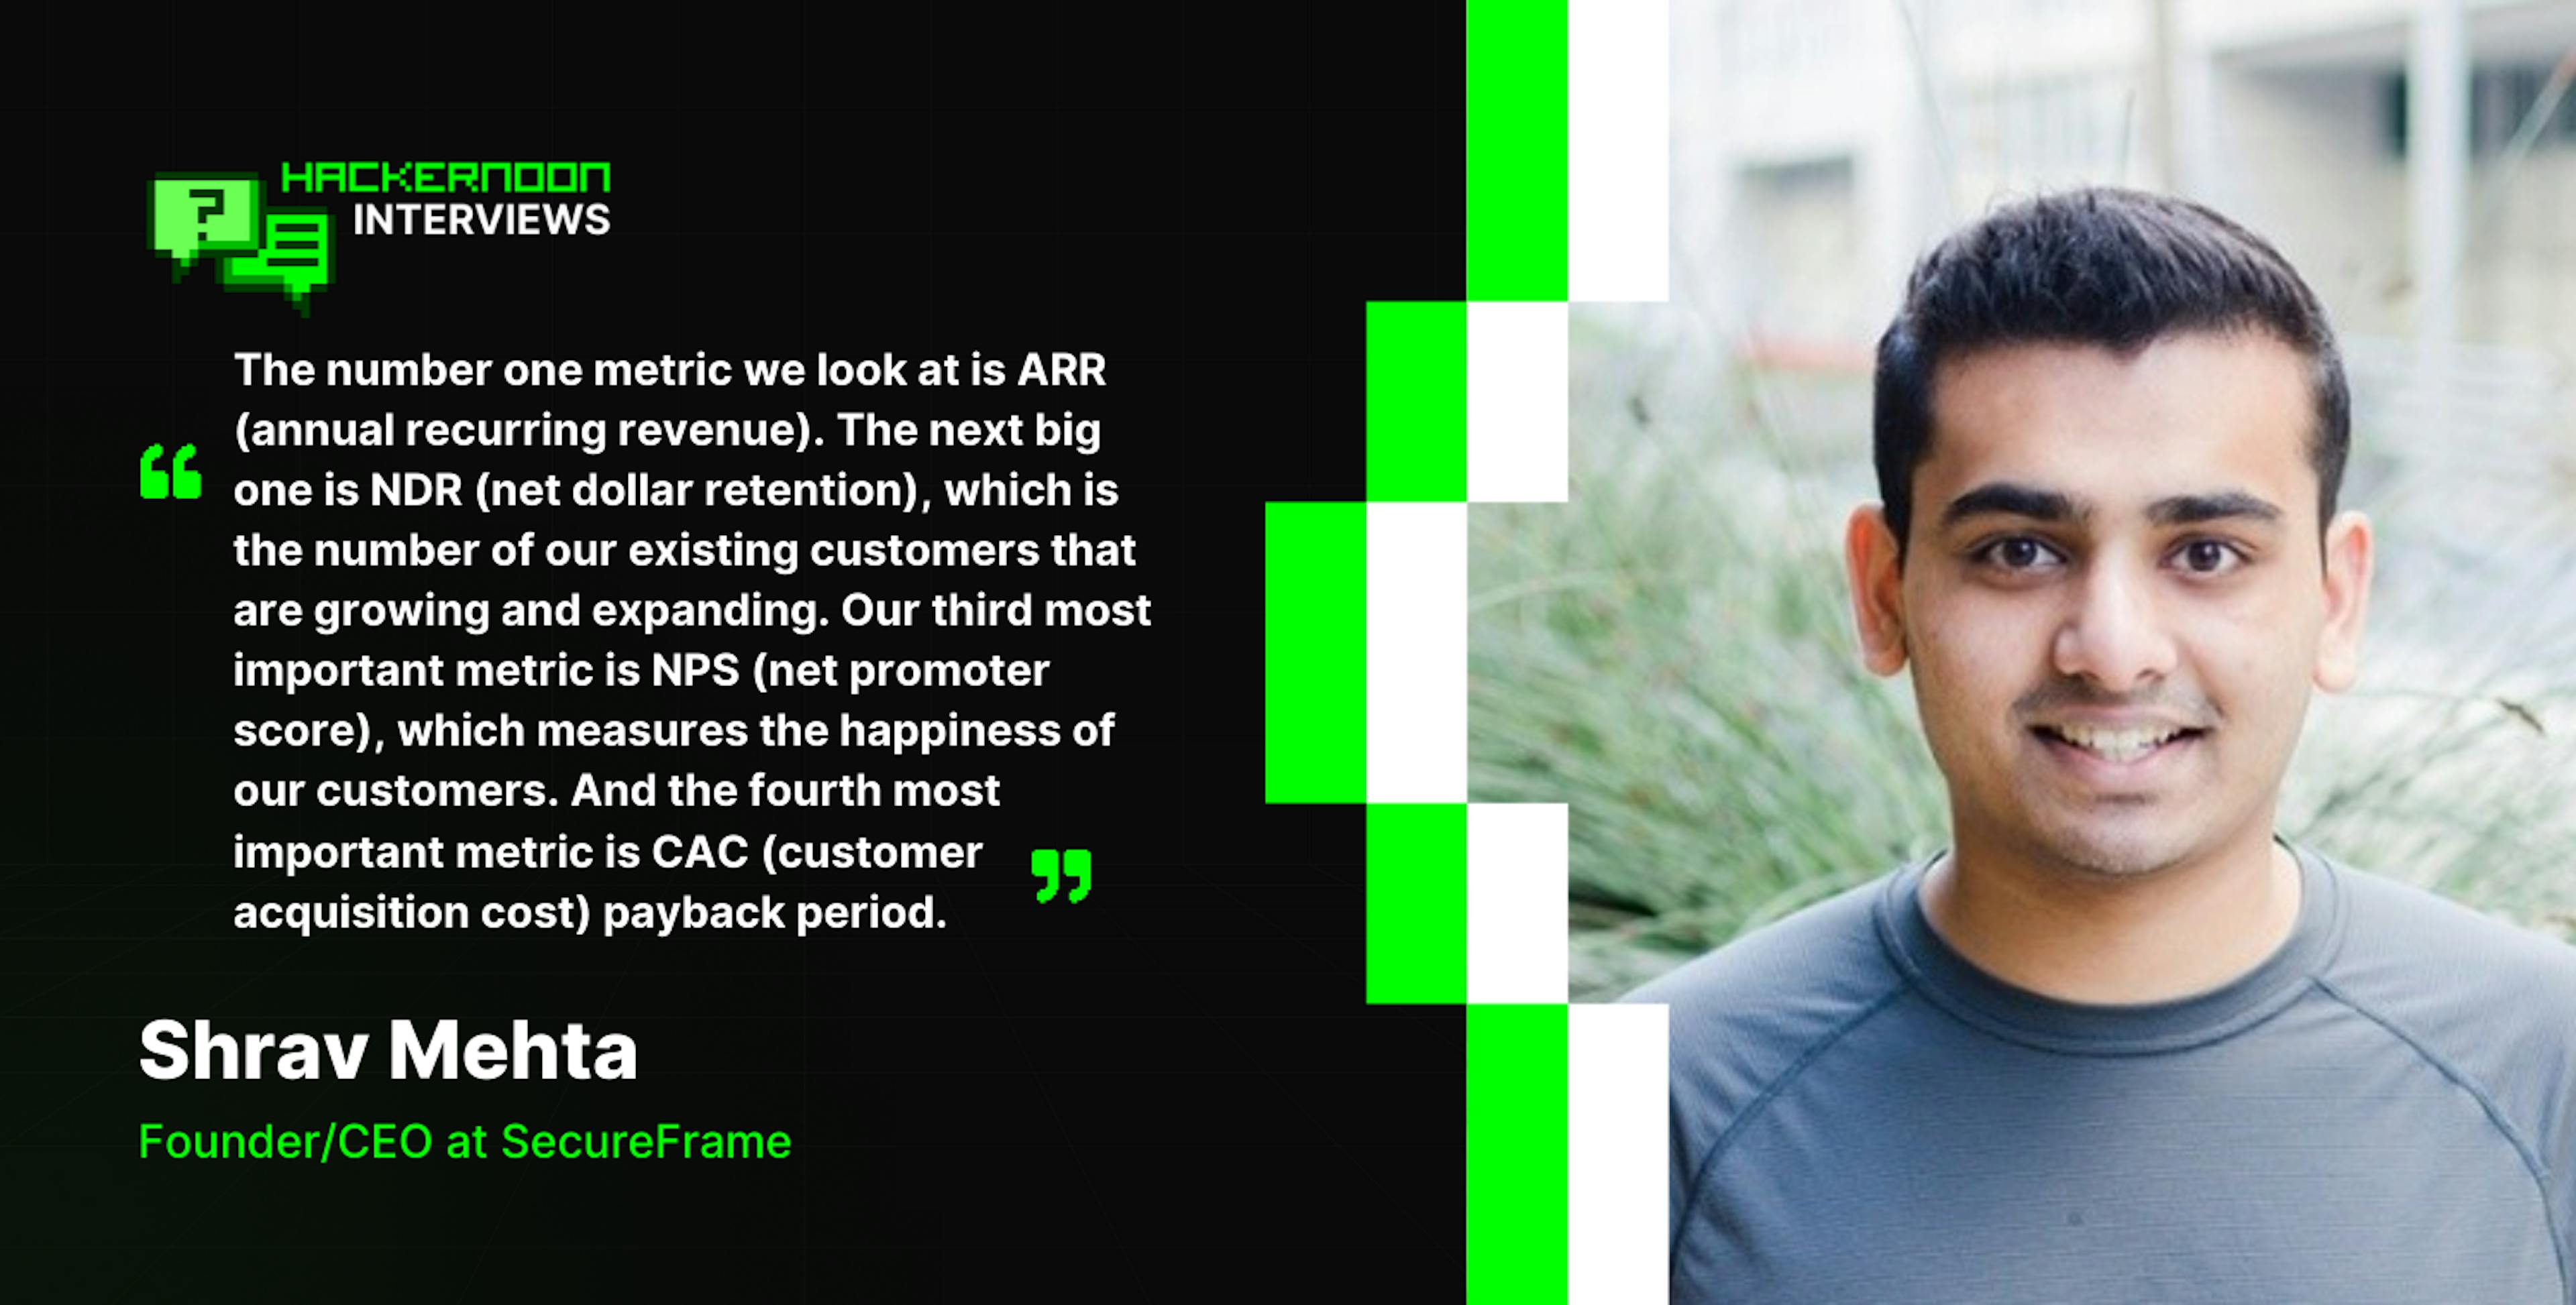 featured image - "Nuestro mayor objetivo de crecimiento es duplicar nuestros ingresos año tras año", afirma el director ejecutivo de SecureFrame, Shrav Mehta.